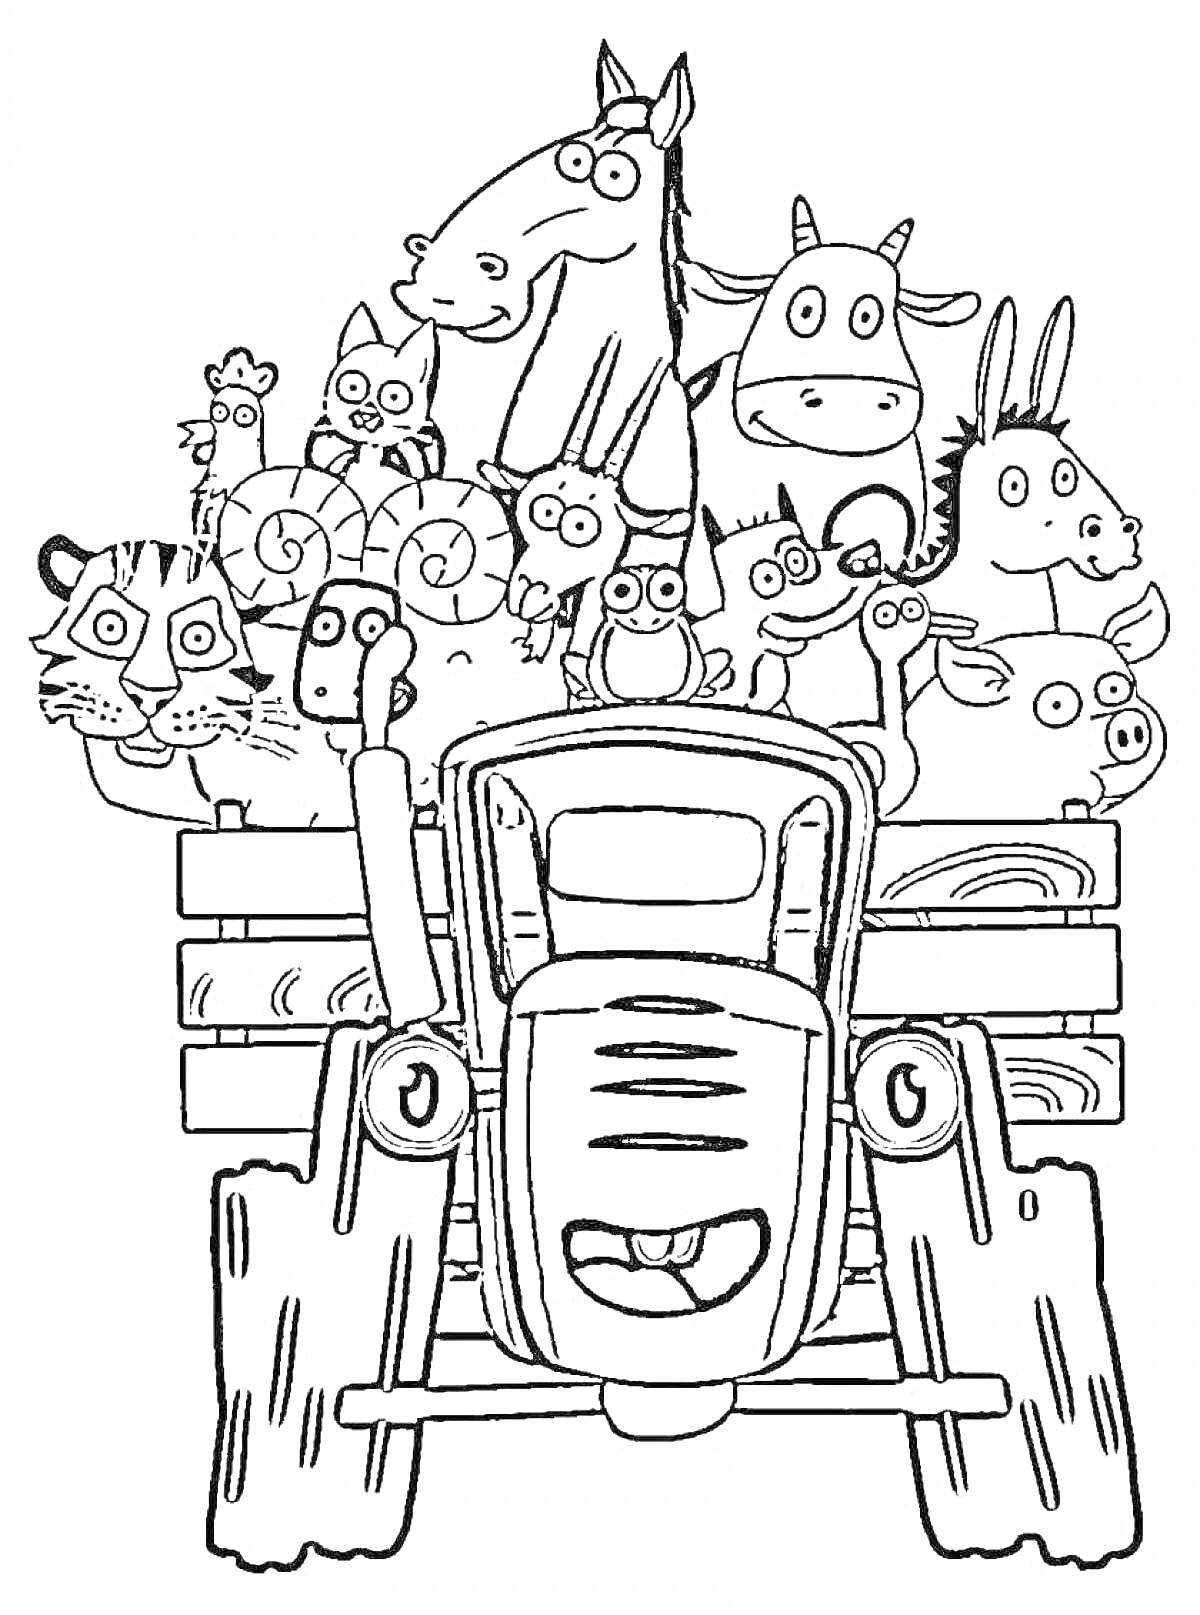 Трактор с различными животными (корову, лошадь, осла, овец, тигра, свинью, козла, куницу и других животных) в кузове